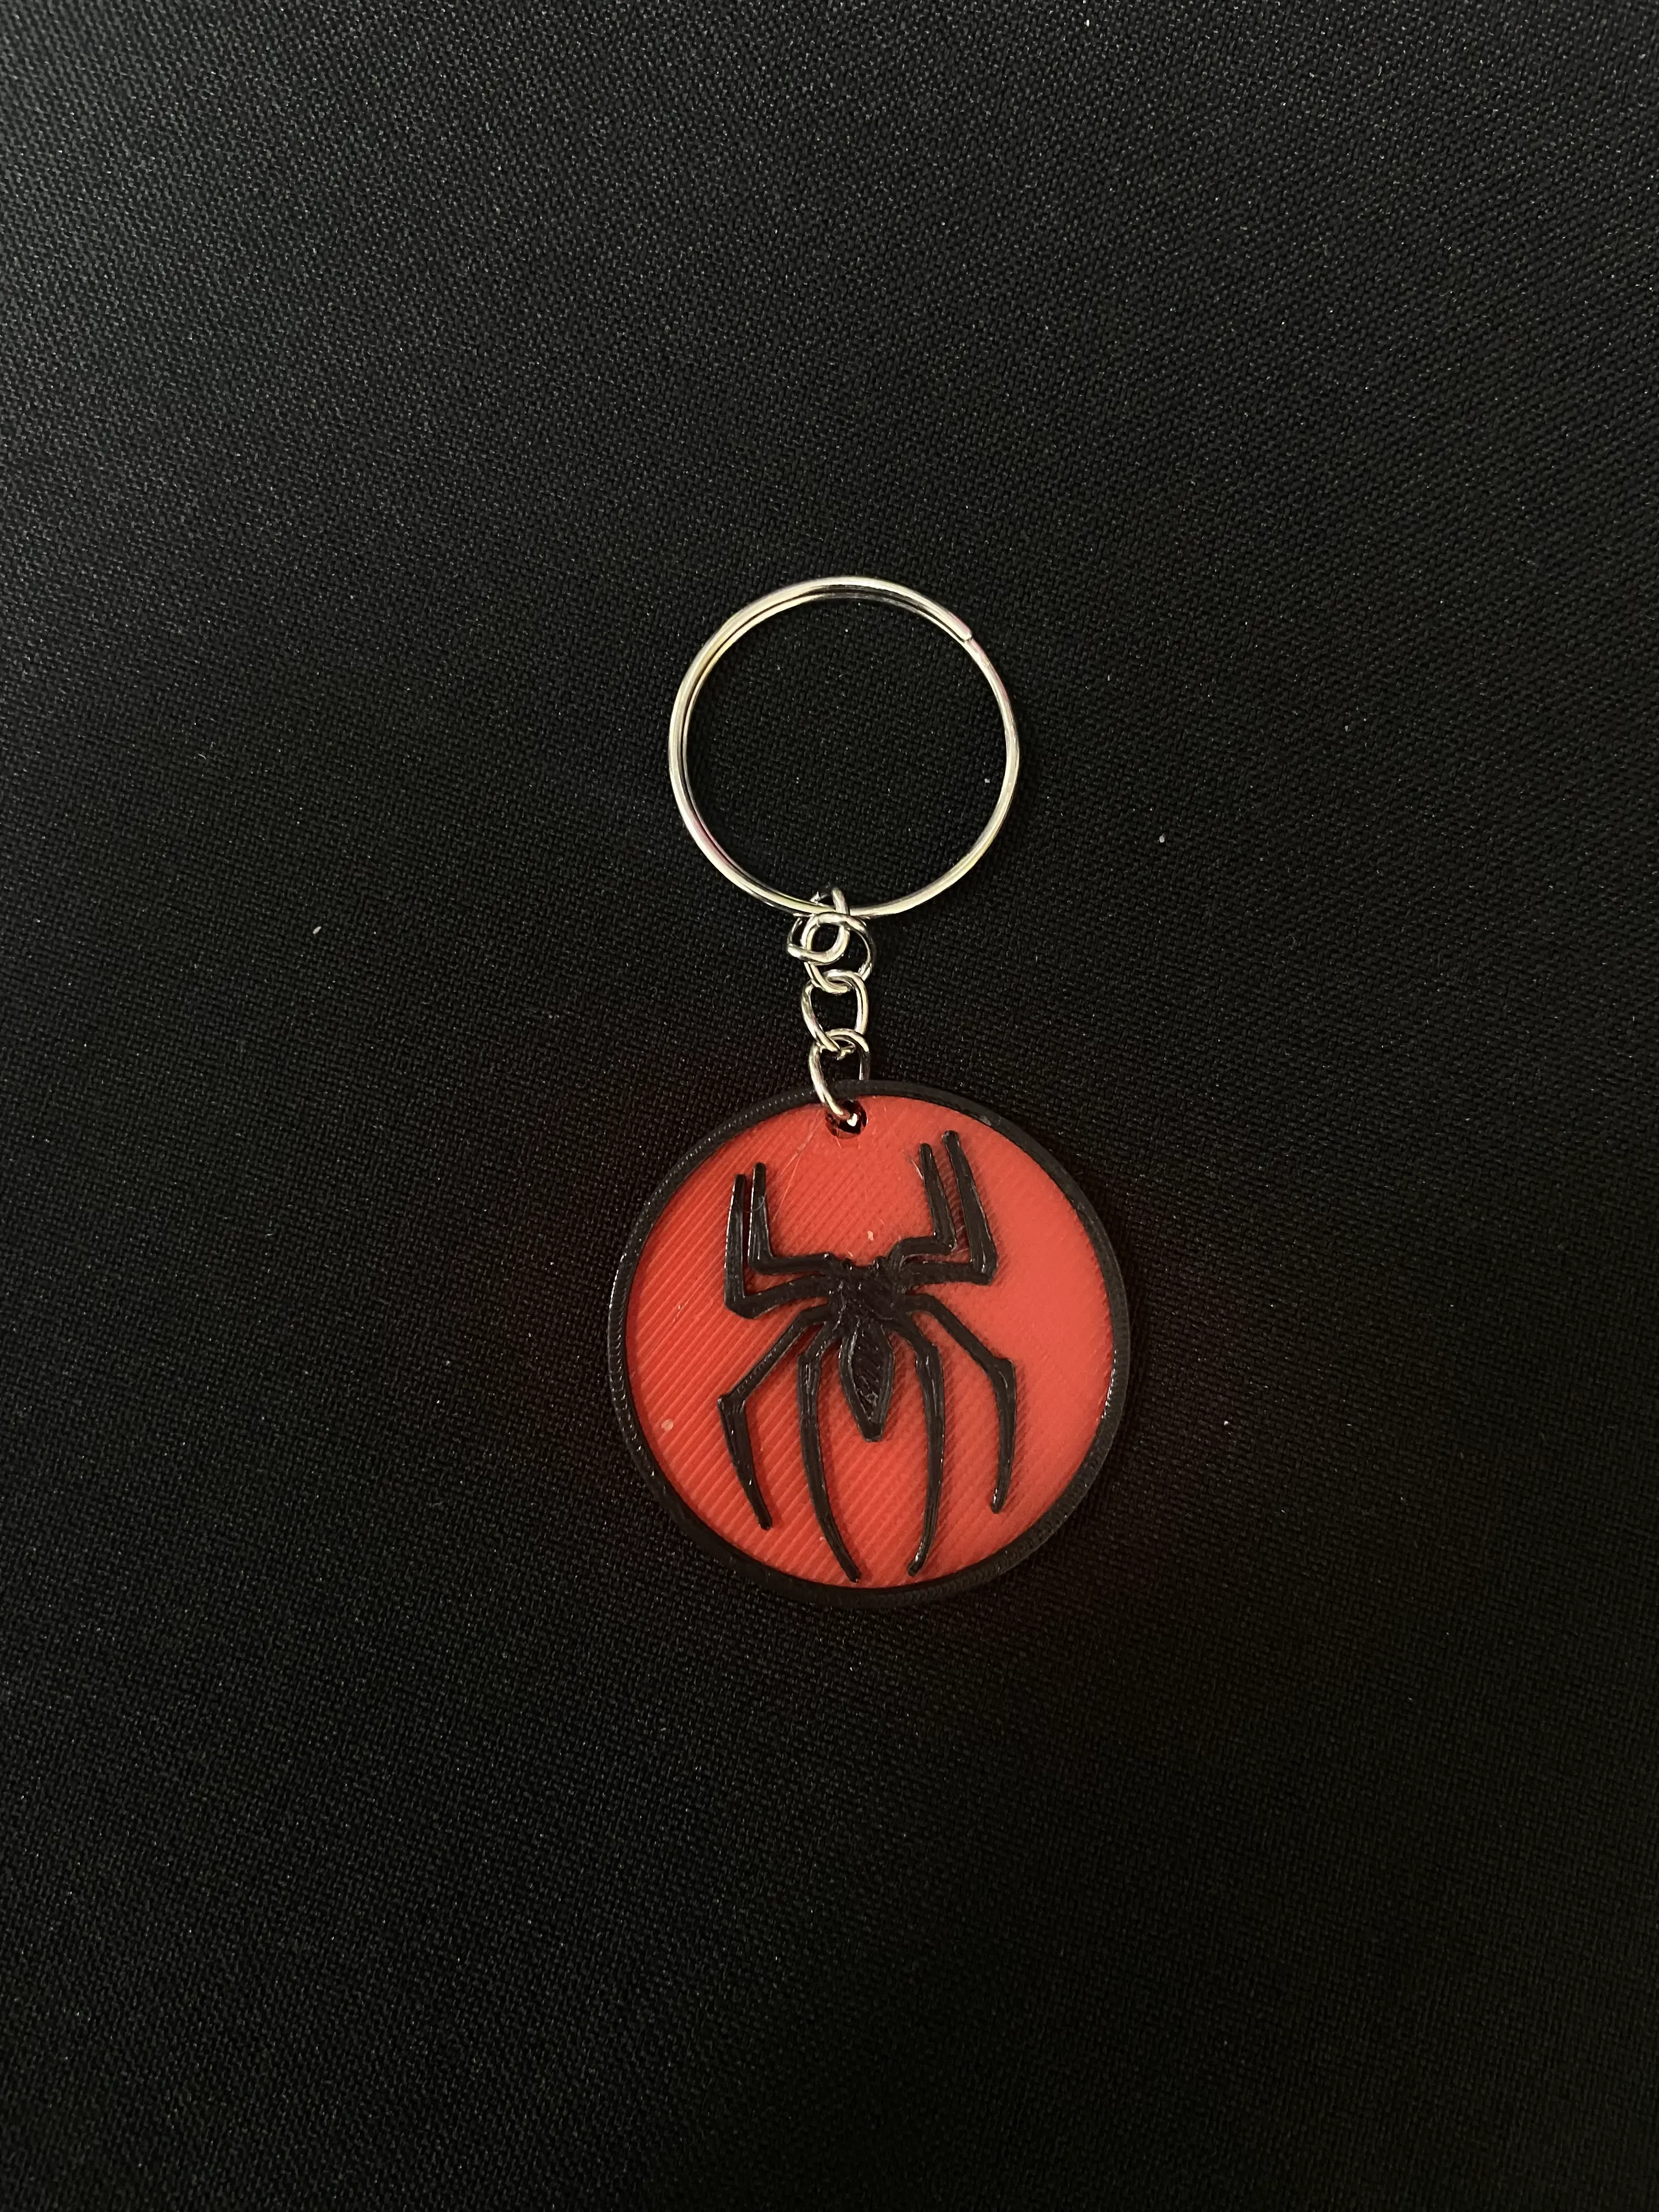 SpiderMan Keychain